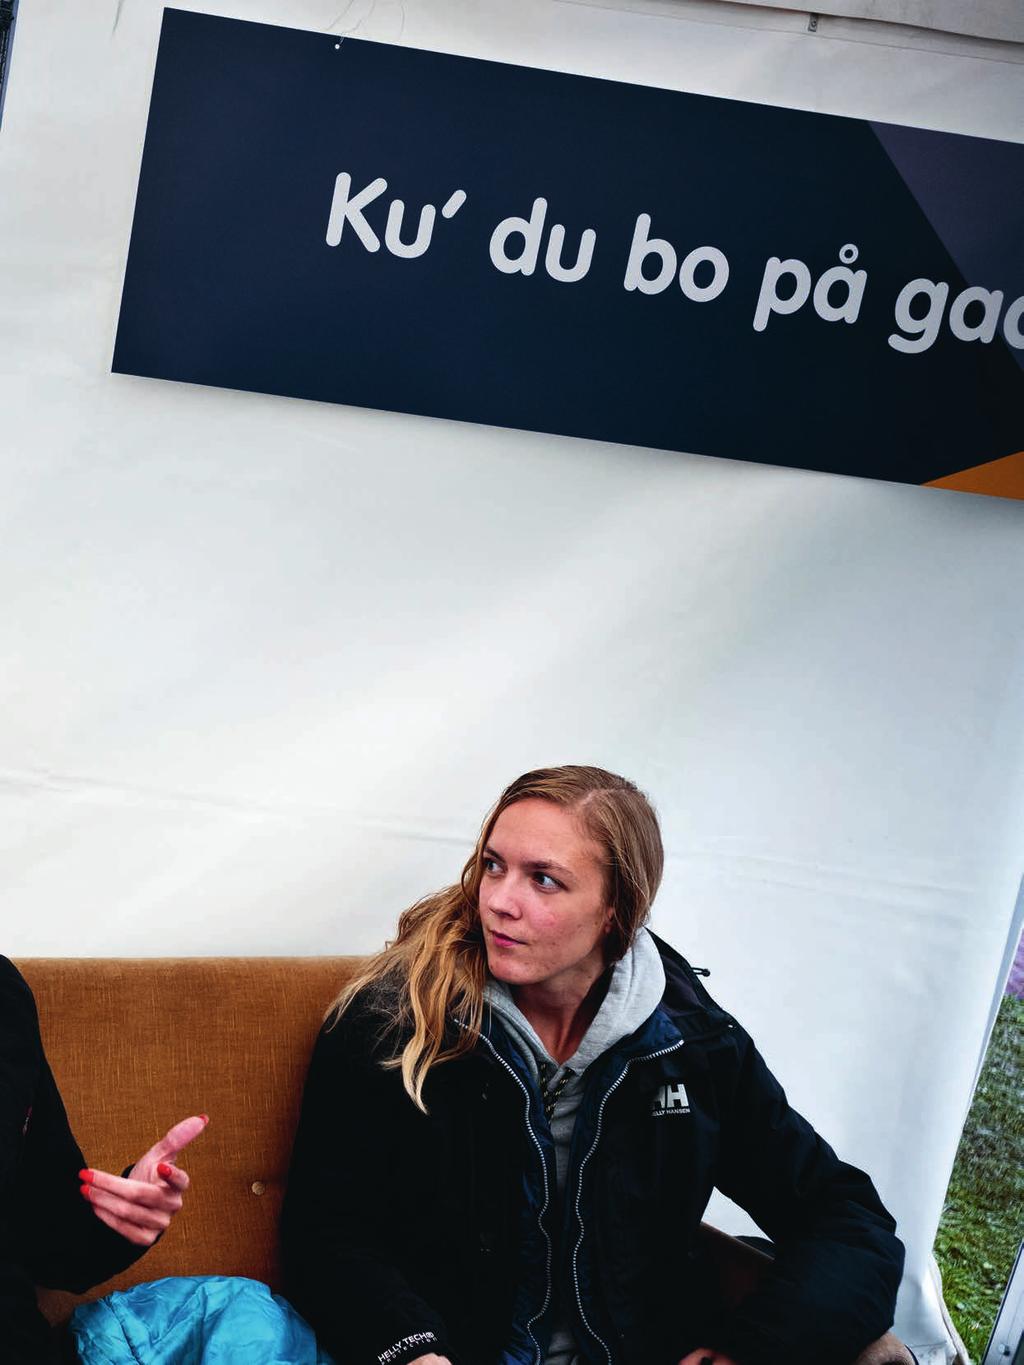 af Anders Tybjerg / foto Lars Bertelsen Nogle har ikke andet valg. Unge hjemløse var et af emnerne i KAB s stand i forbindelse med Ungdommens Folkemøde i Søndermarken den 7.-8. september 2017.